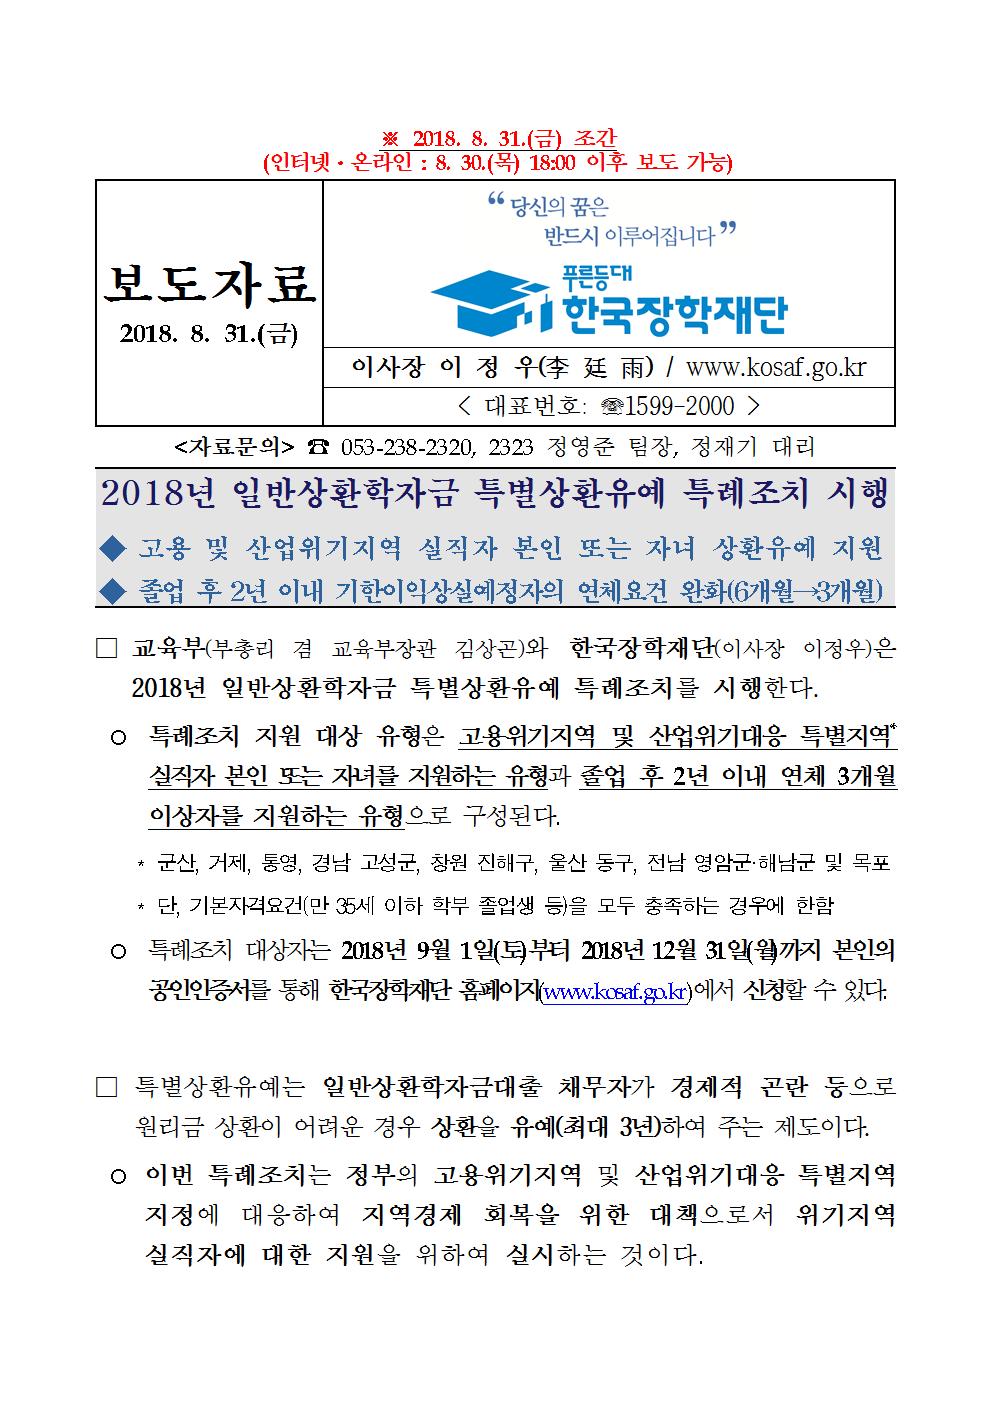 08-30(목)[보도자료] 한국장학재단, 2018년 일반상환학자금 특별상환유예 특례조치 시행001.jpg